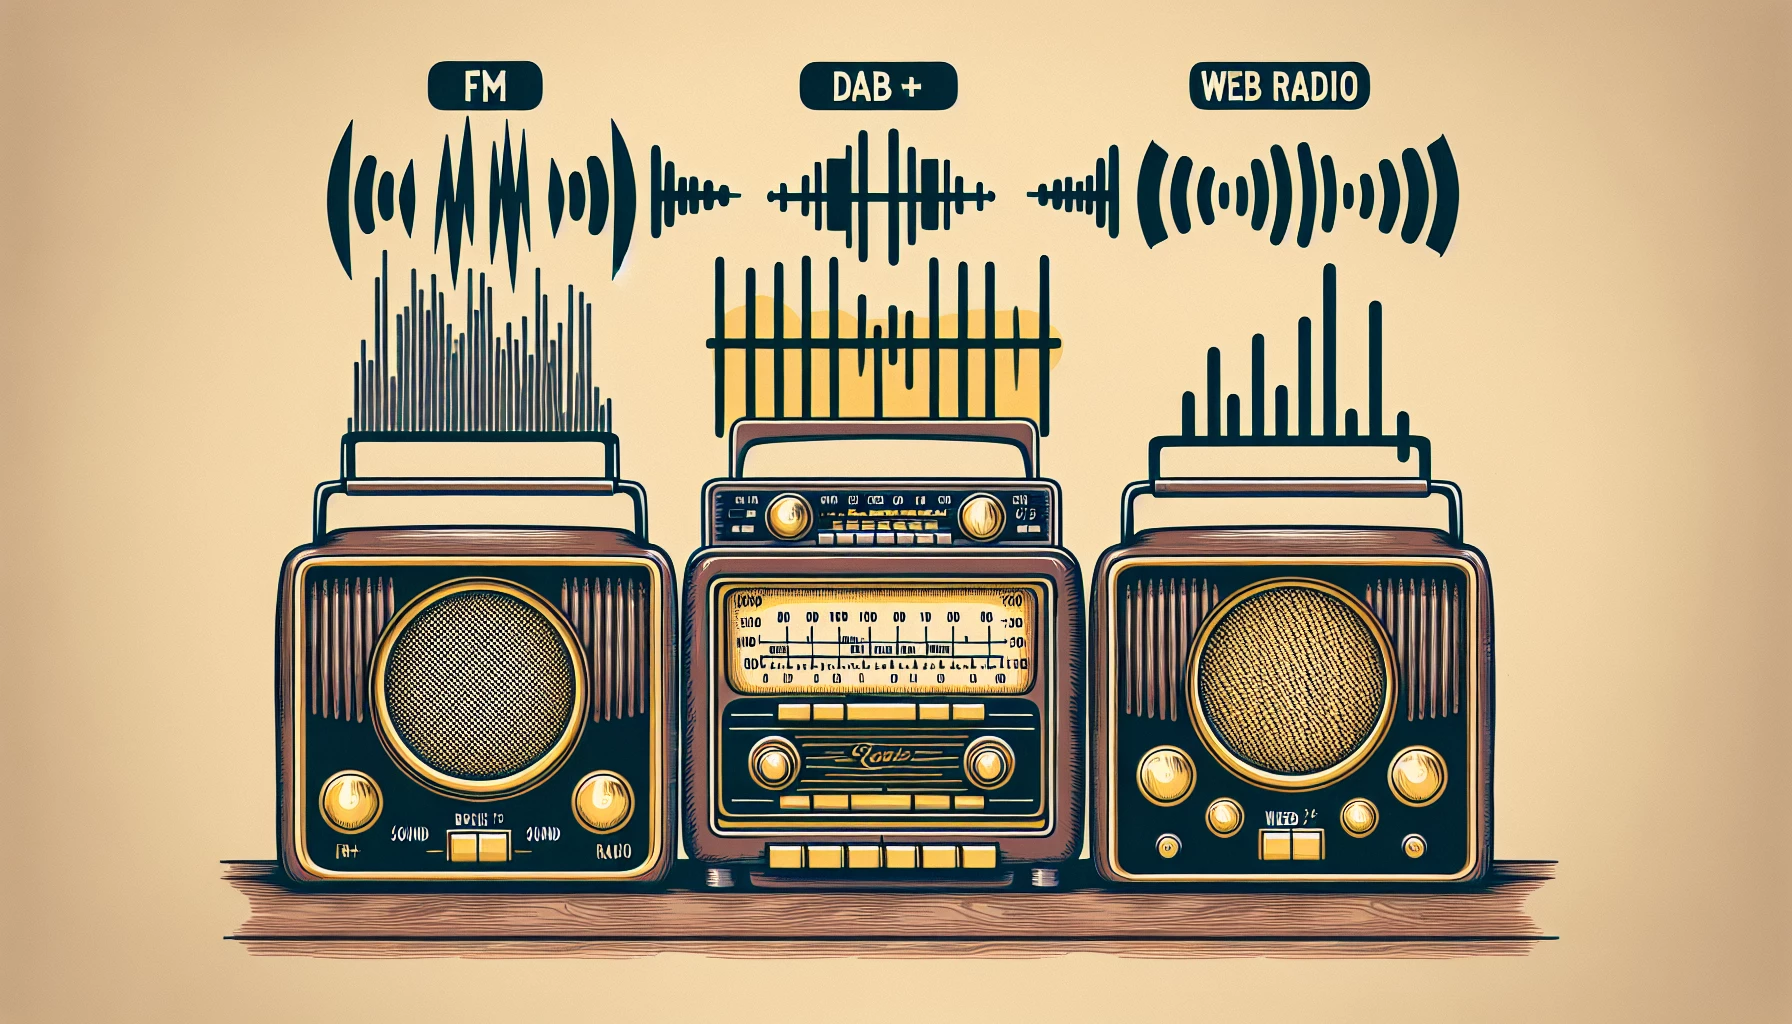 Comparatif des caractéristiques de qualité sonore entre la FM, le DAB+ et la Web Radio